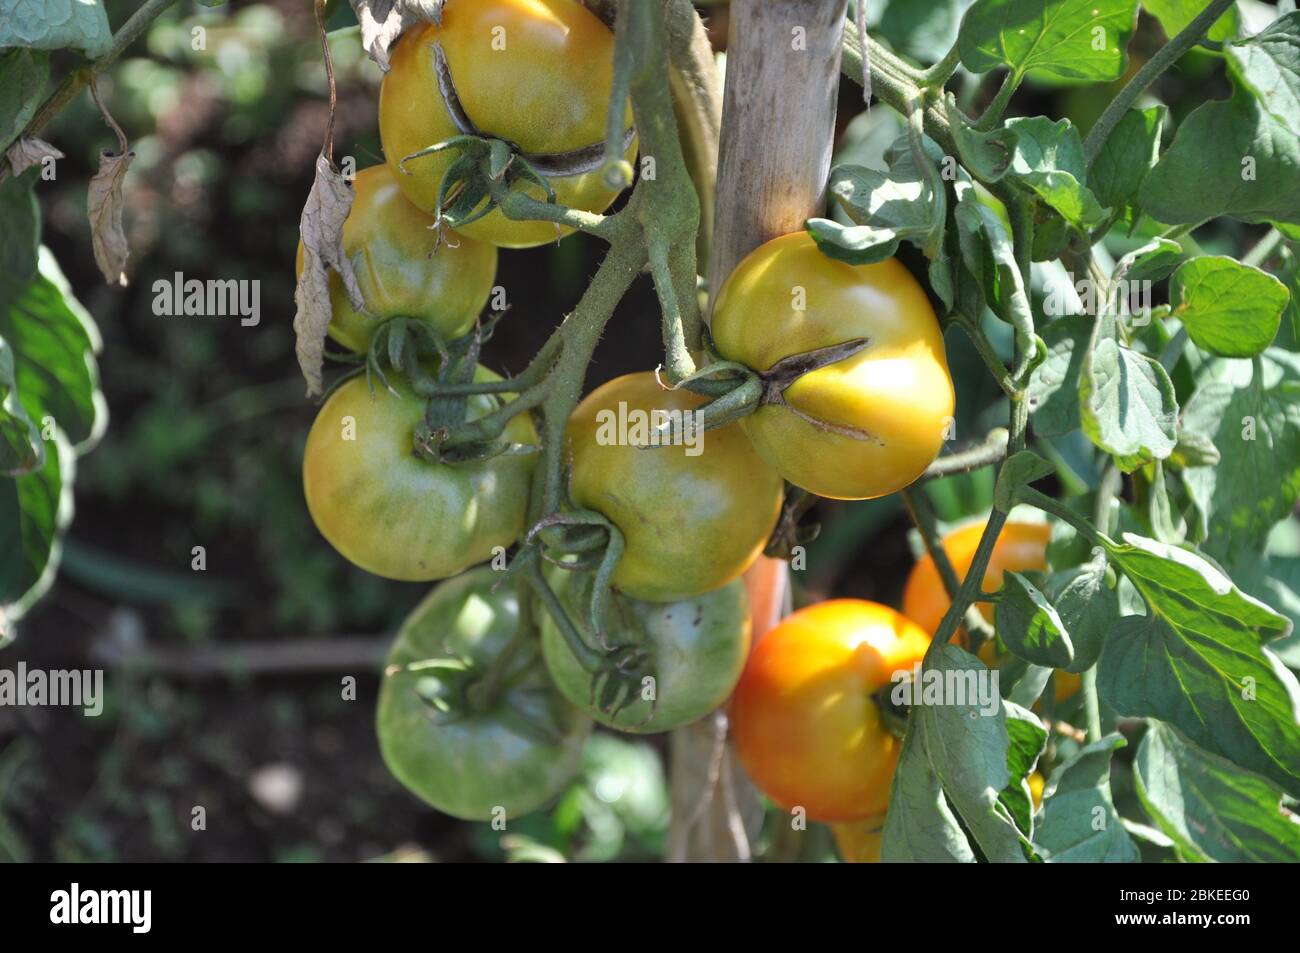 Pomodori in giardino. Immagine di pomodori freschi biologici su albero. Foto Stock